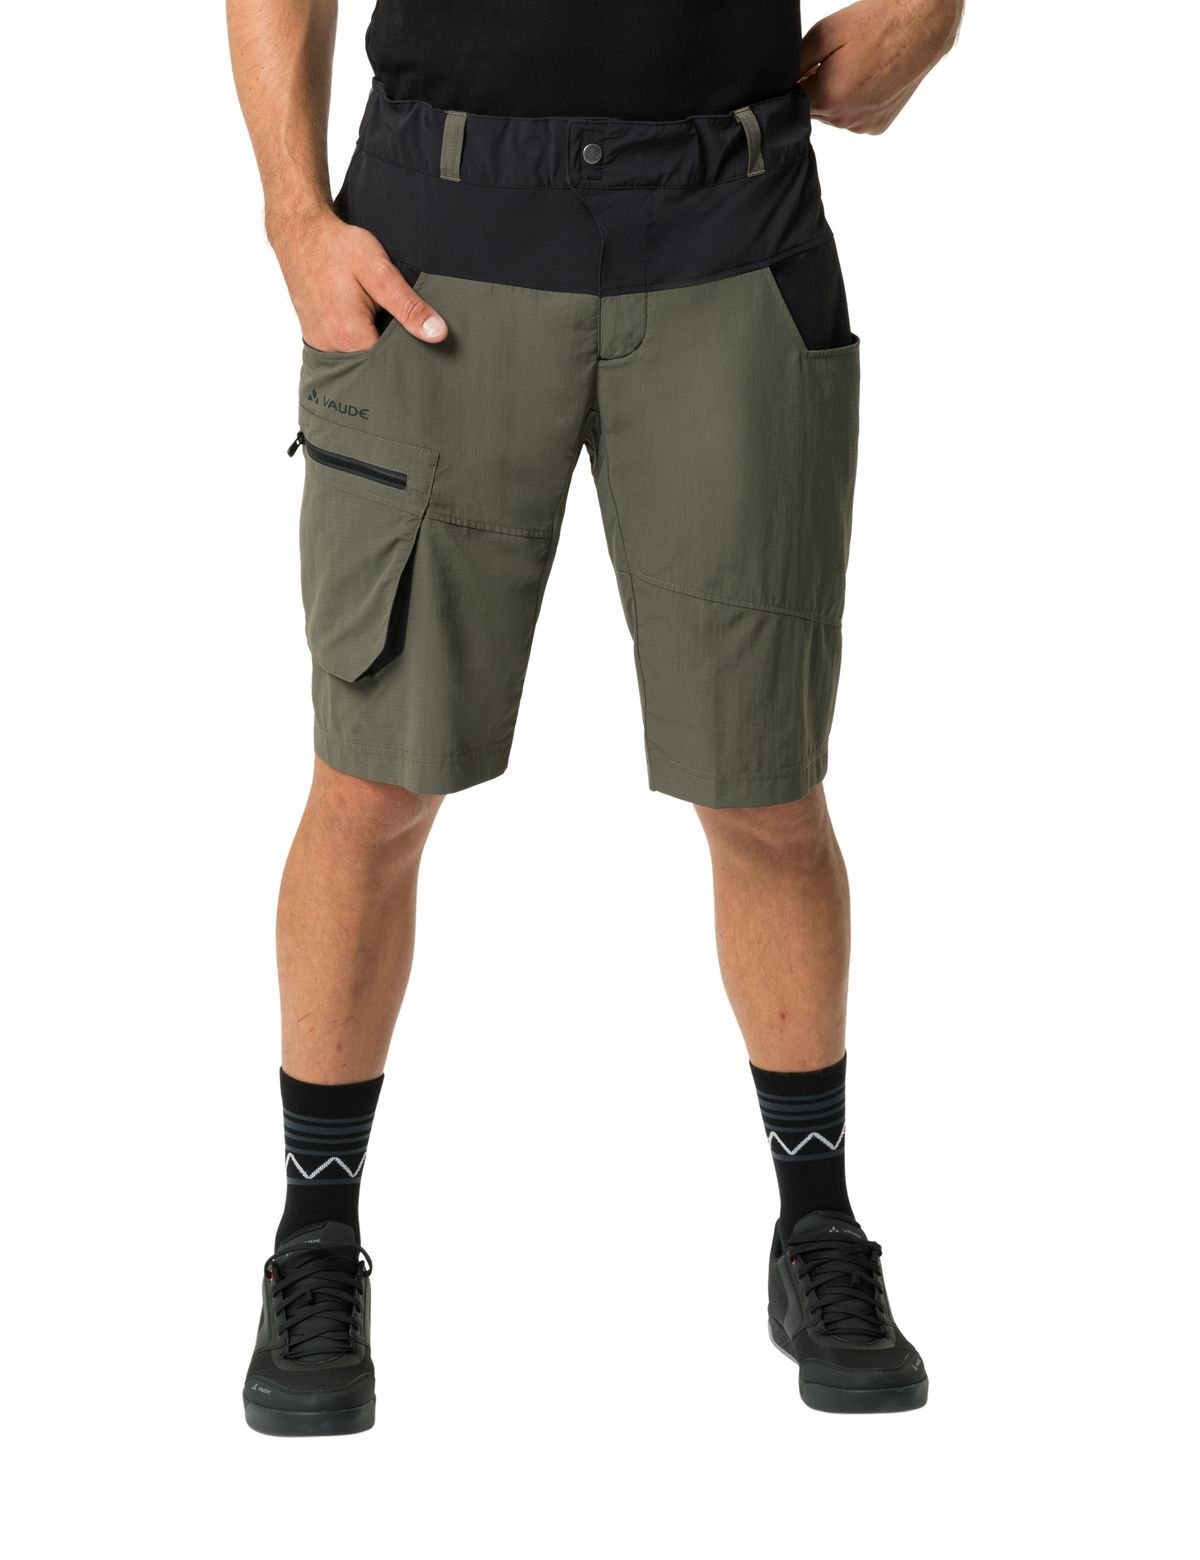 Vaude Qimsa Shorts - MTB shorts - Men's